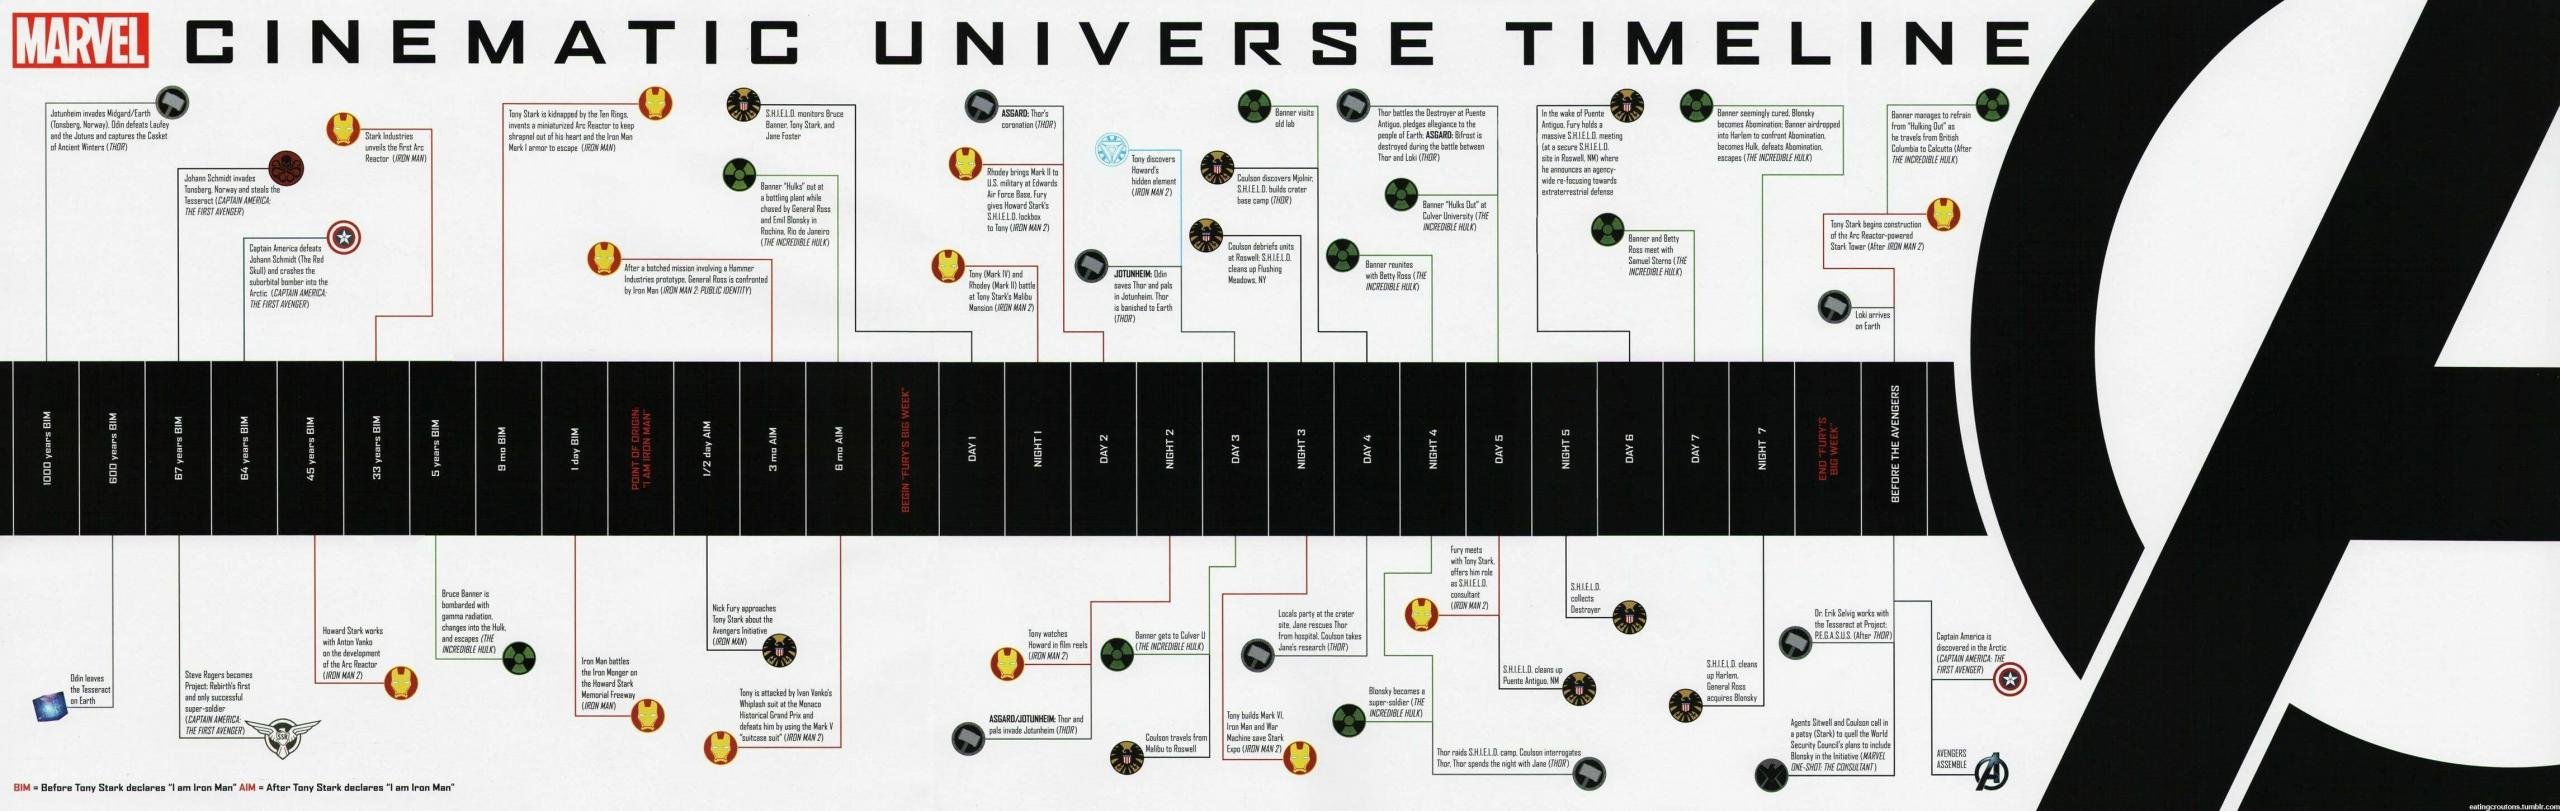 Ordine cronologico degli eventi che hanno portato alla formazione degli Avengers, uno dei momenti chiave del Marvel Cinematic Universe